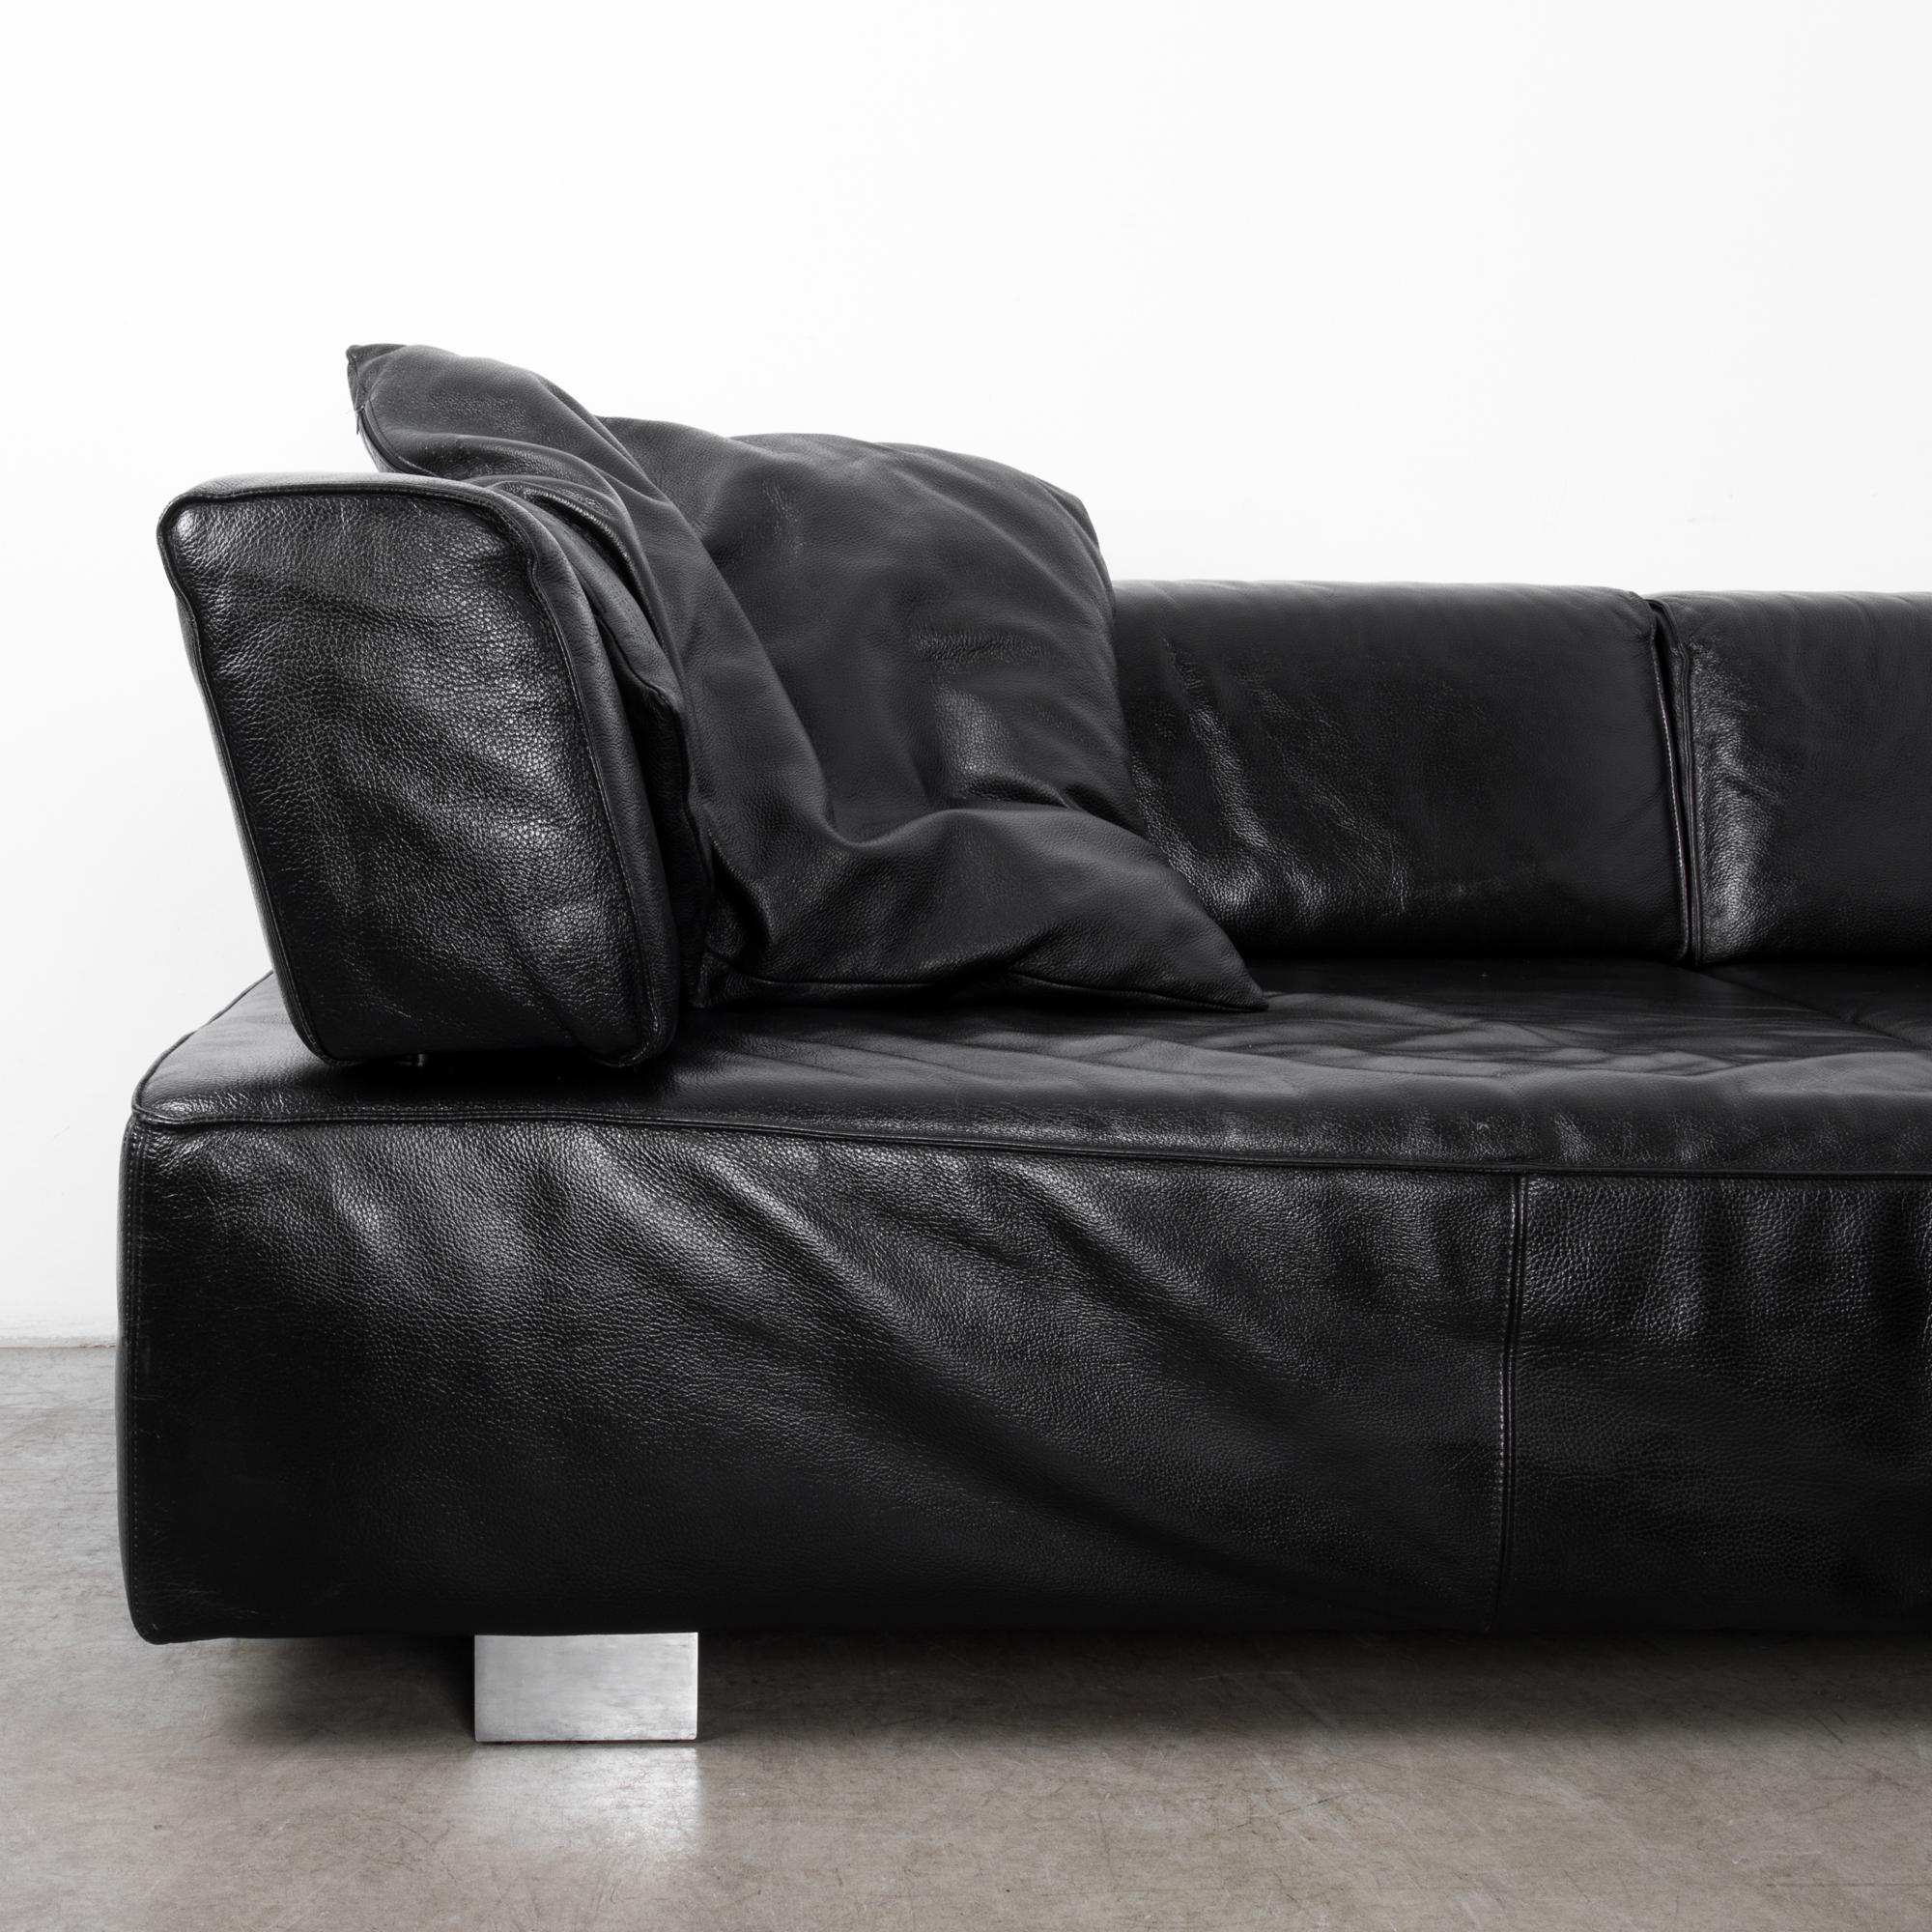 Minimalist Vintage German Black Leather Corner Sofa by Brühl & Sippold